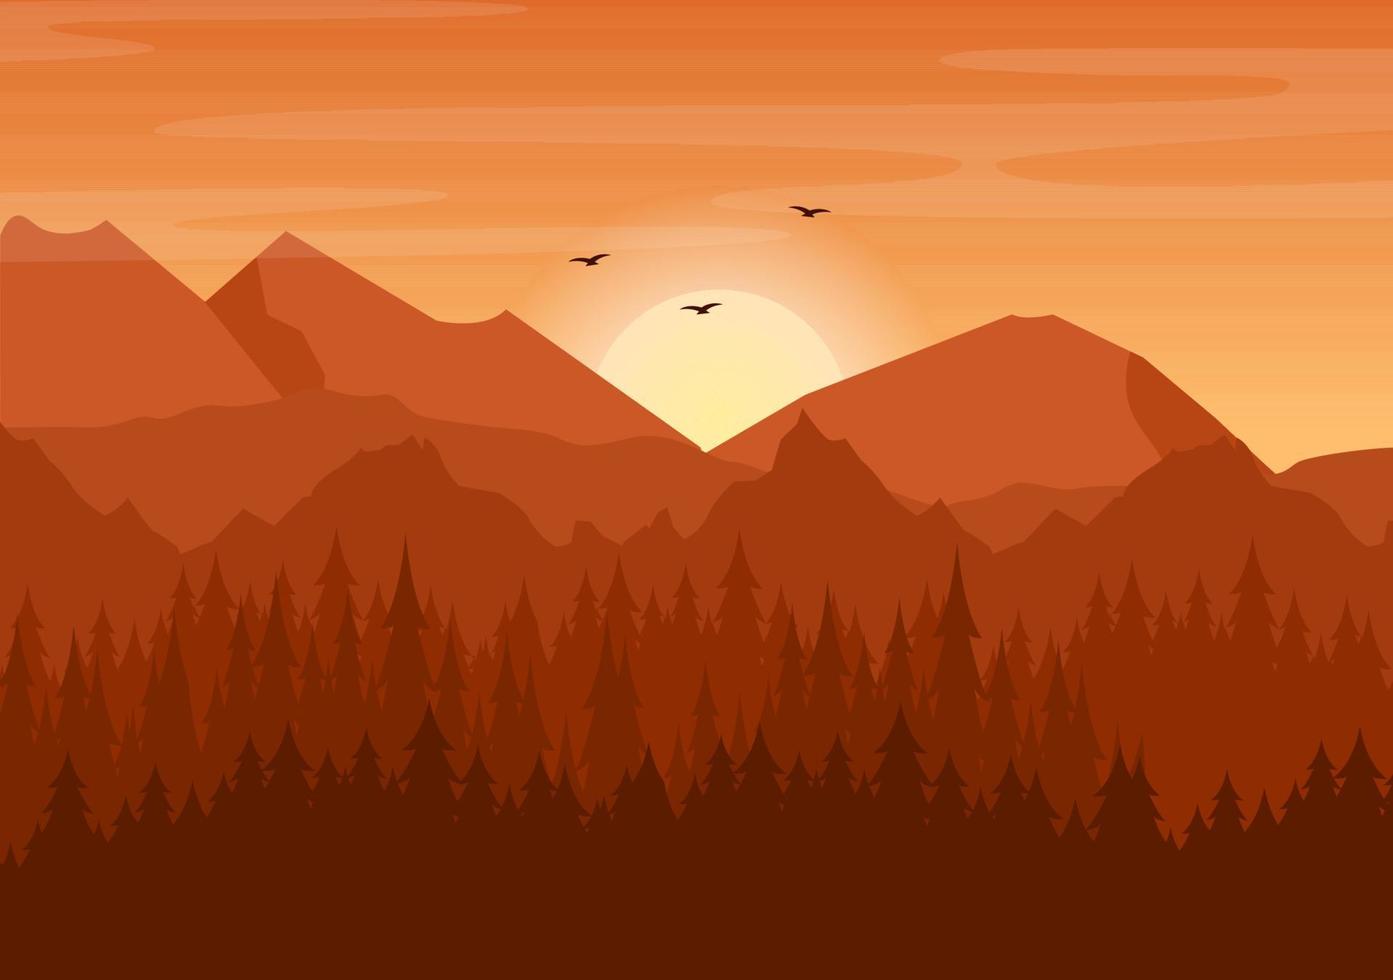 Sonnenuntergangslandschaft von Bergen, Hügeln, Wildnis, Sand, See und Tal in flacher wilder Natur für Poster, Banner oder Hintergrundillustration vektor